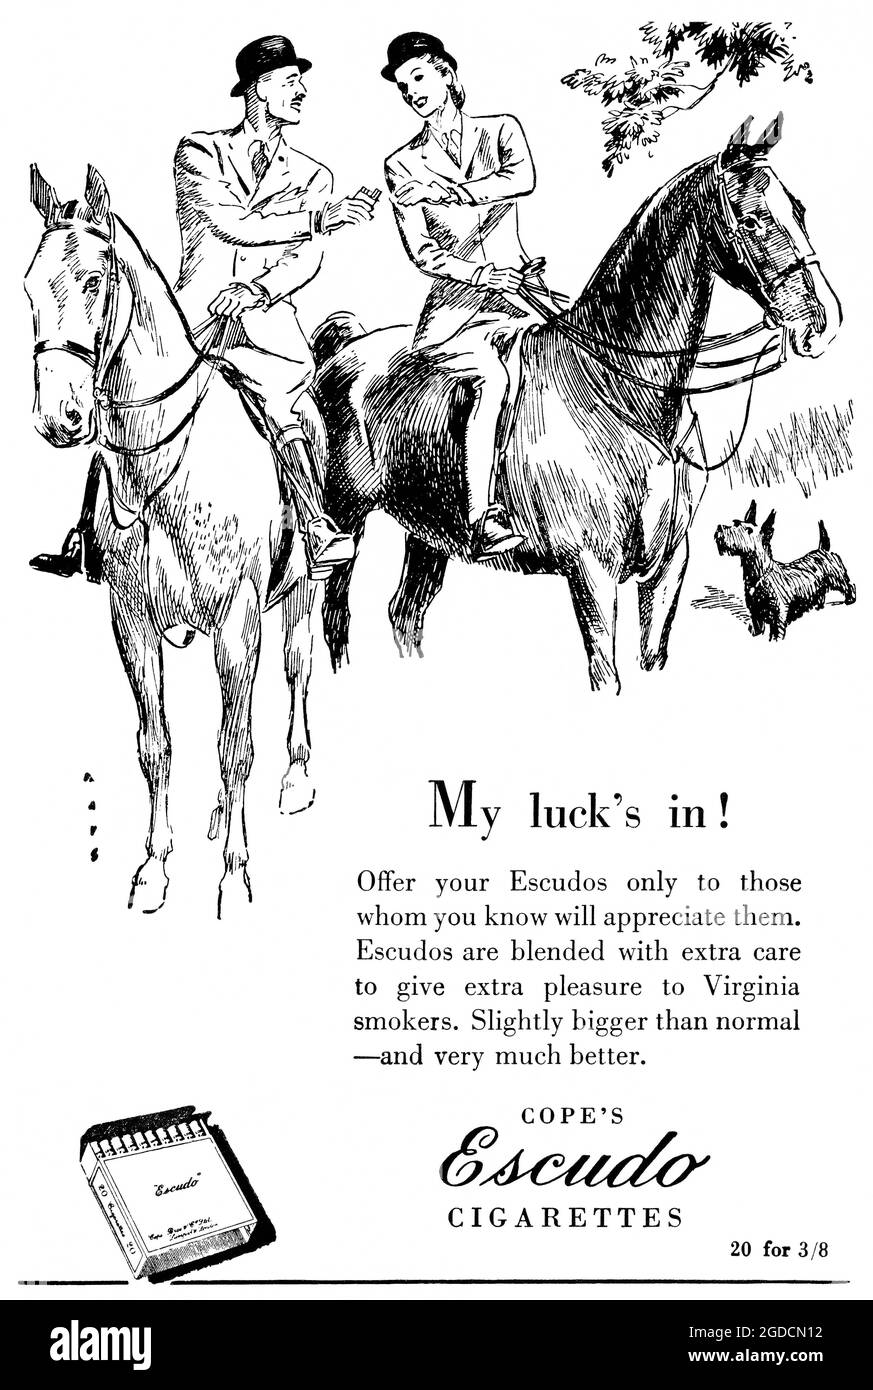 1948 British advertisement for Cope's Escudo Cigarettes. Stock Photo